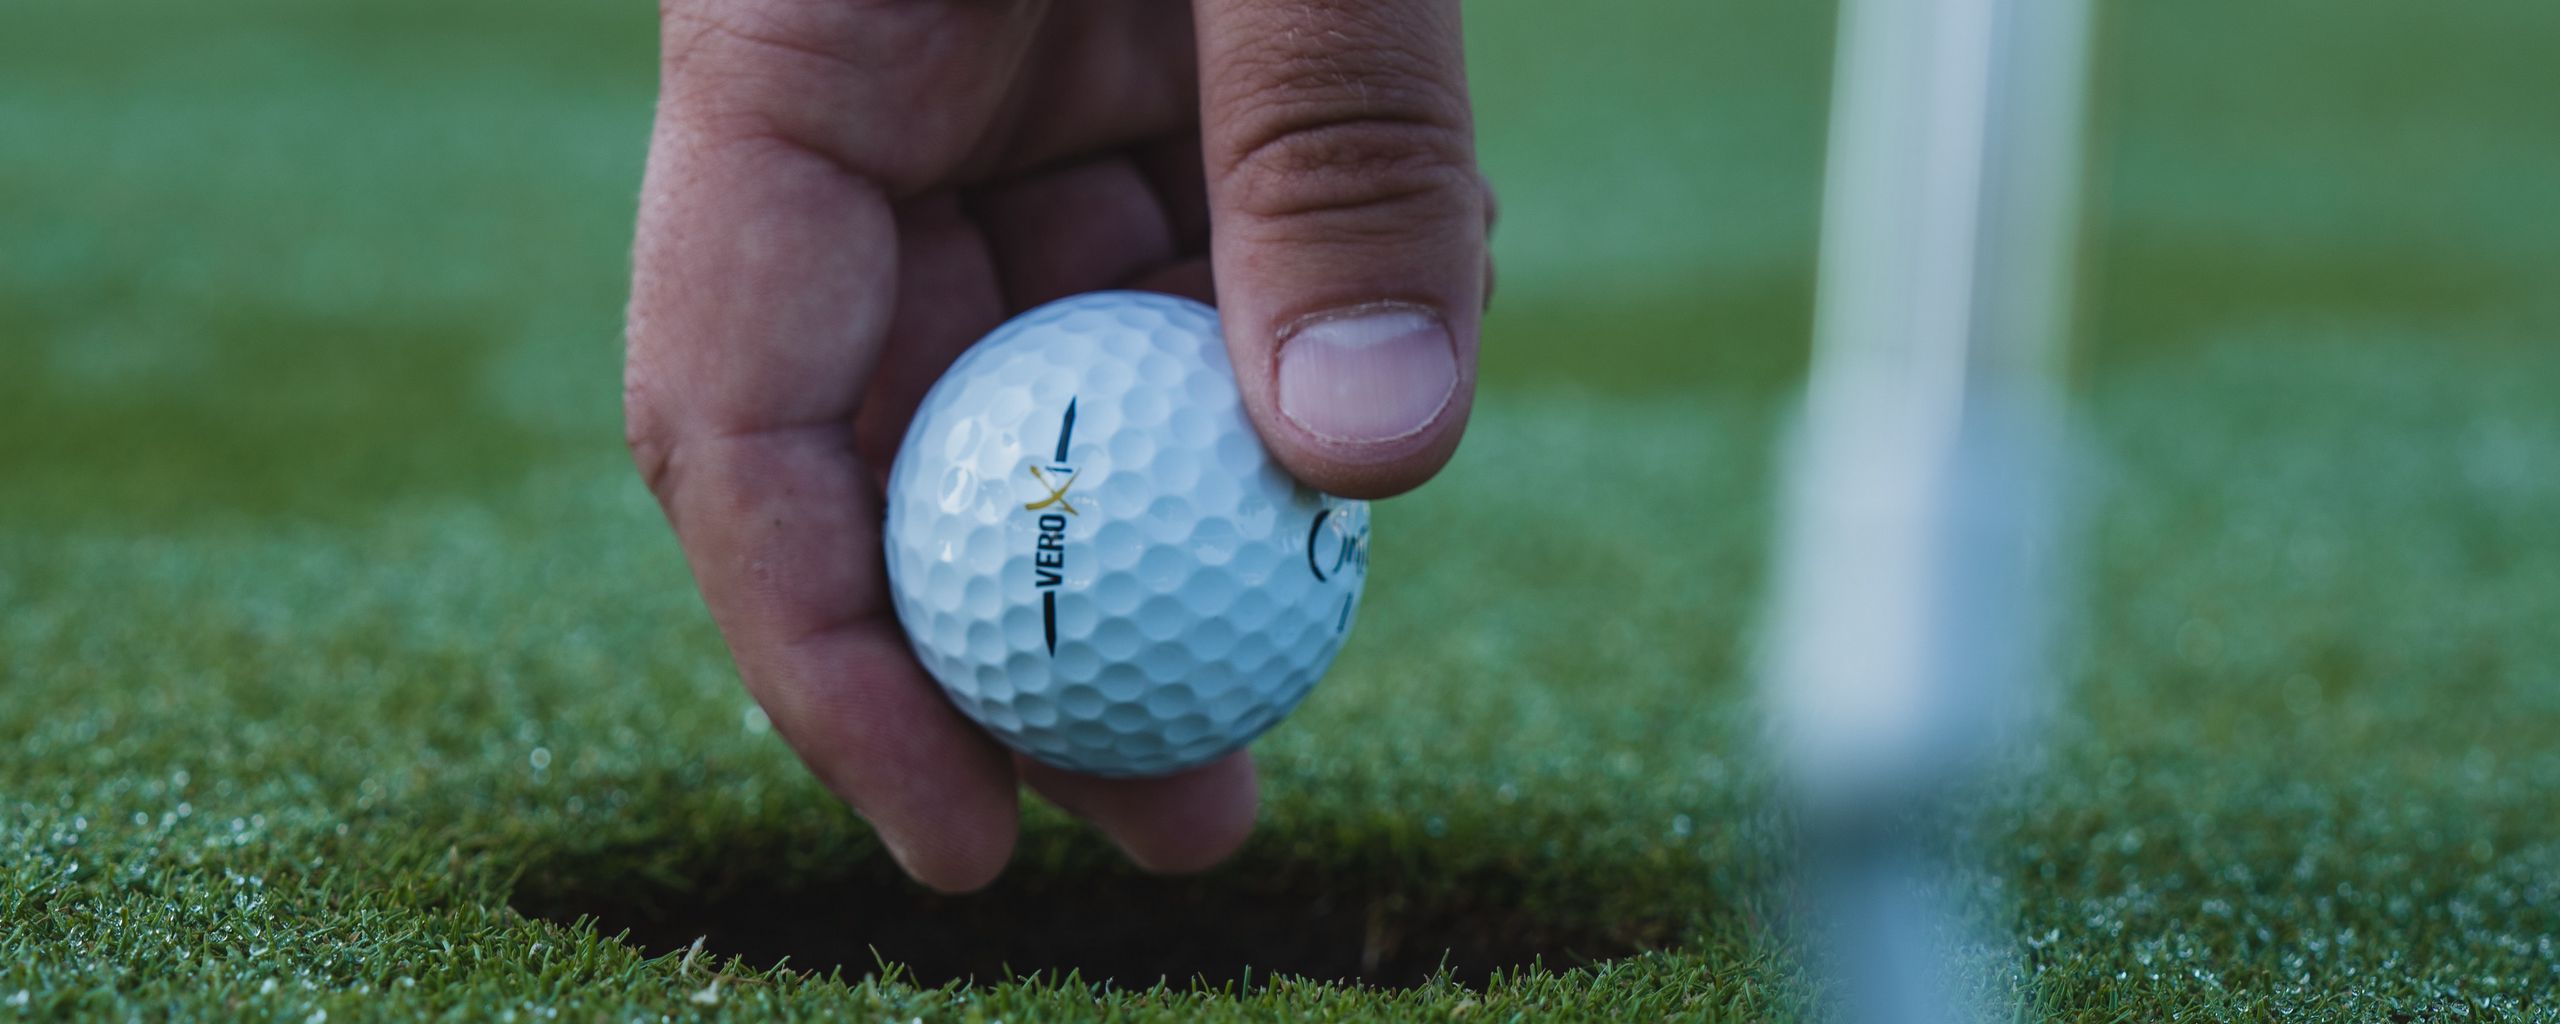 2560x1024 Wallpaper golf, ball, hand, grass, sport